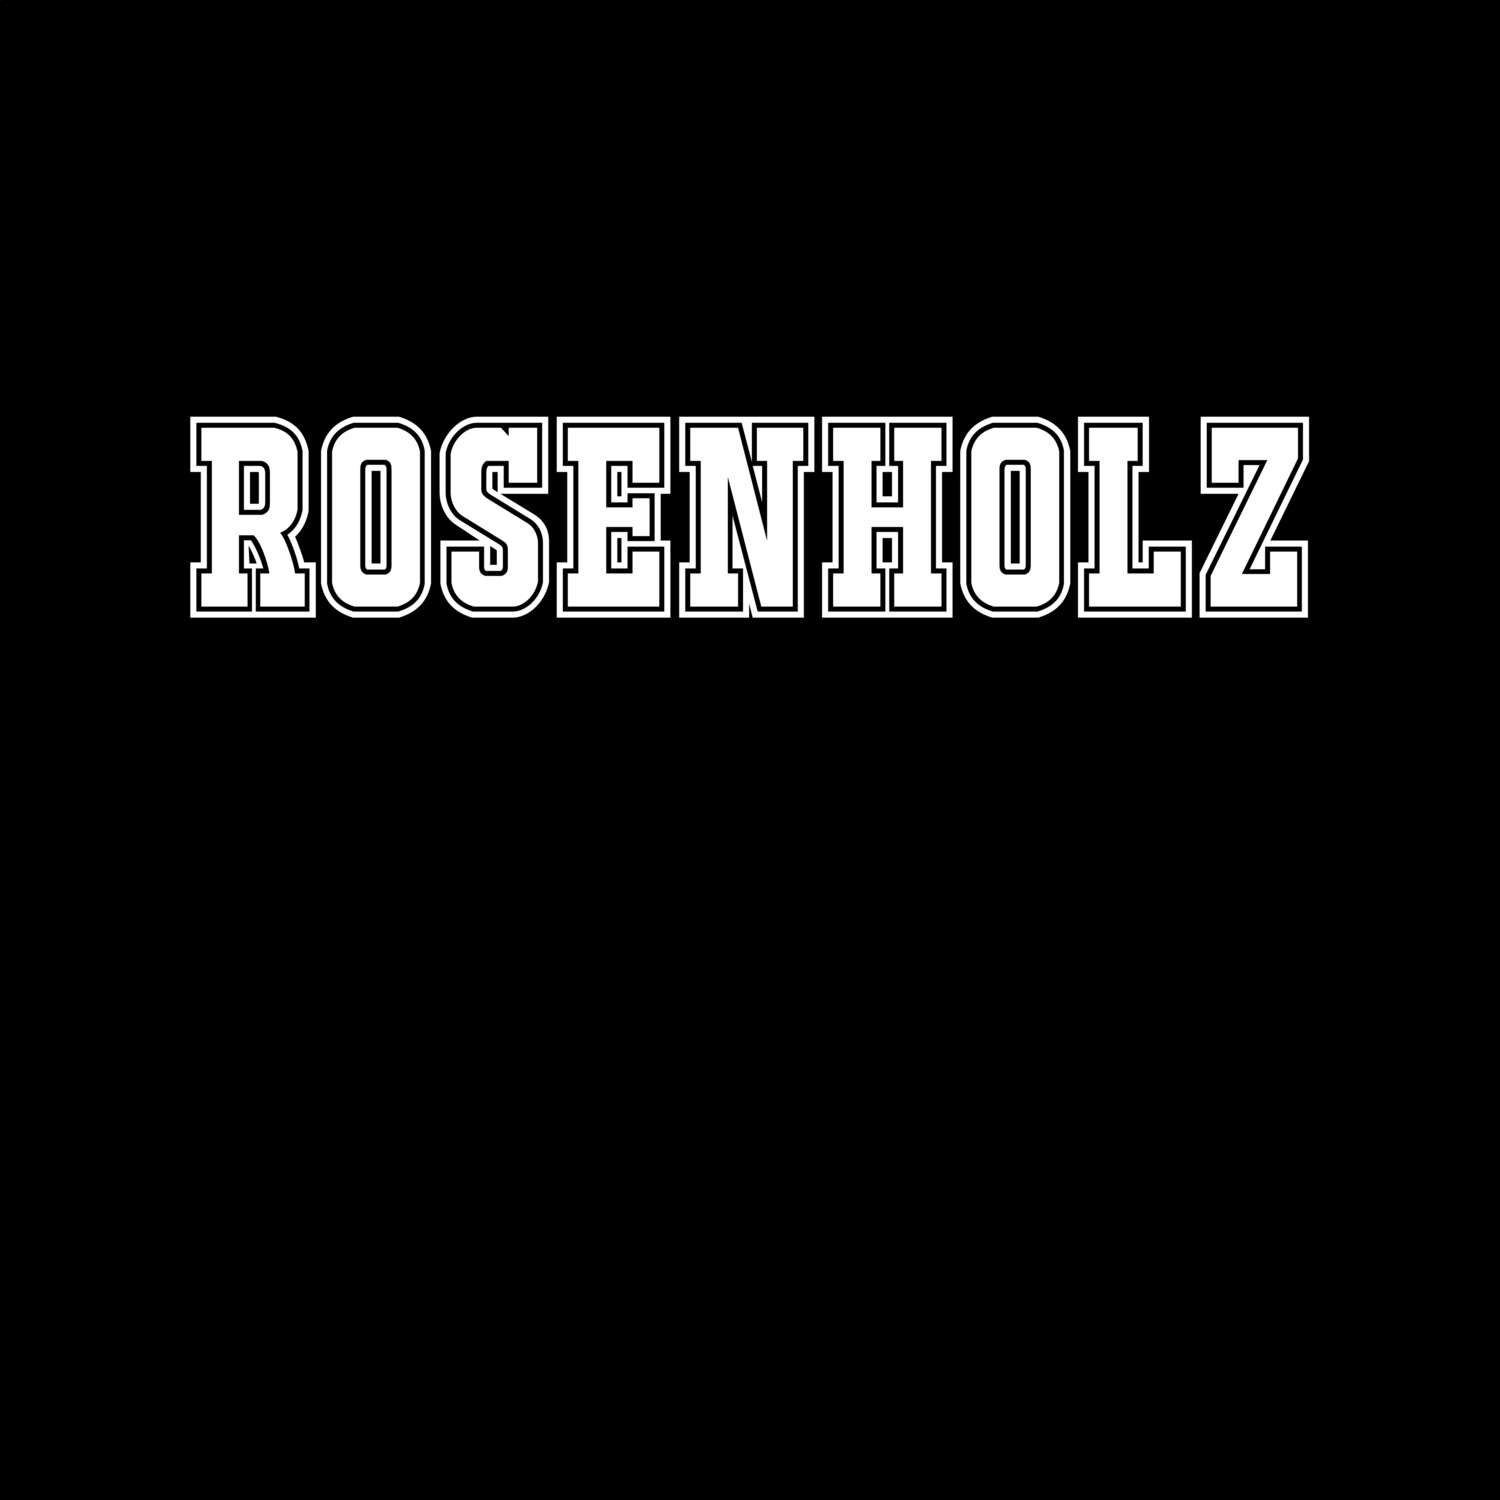 Rosenholz T-Shirt »Classic«